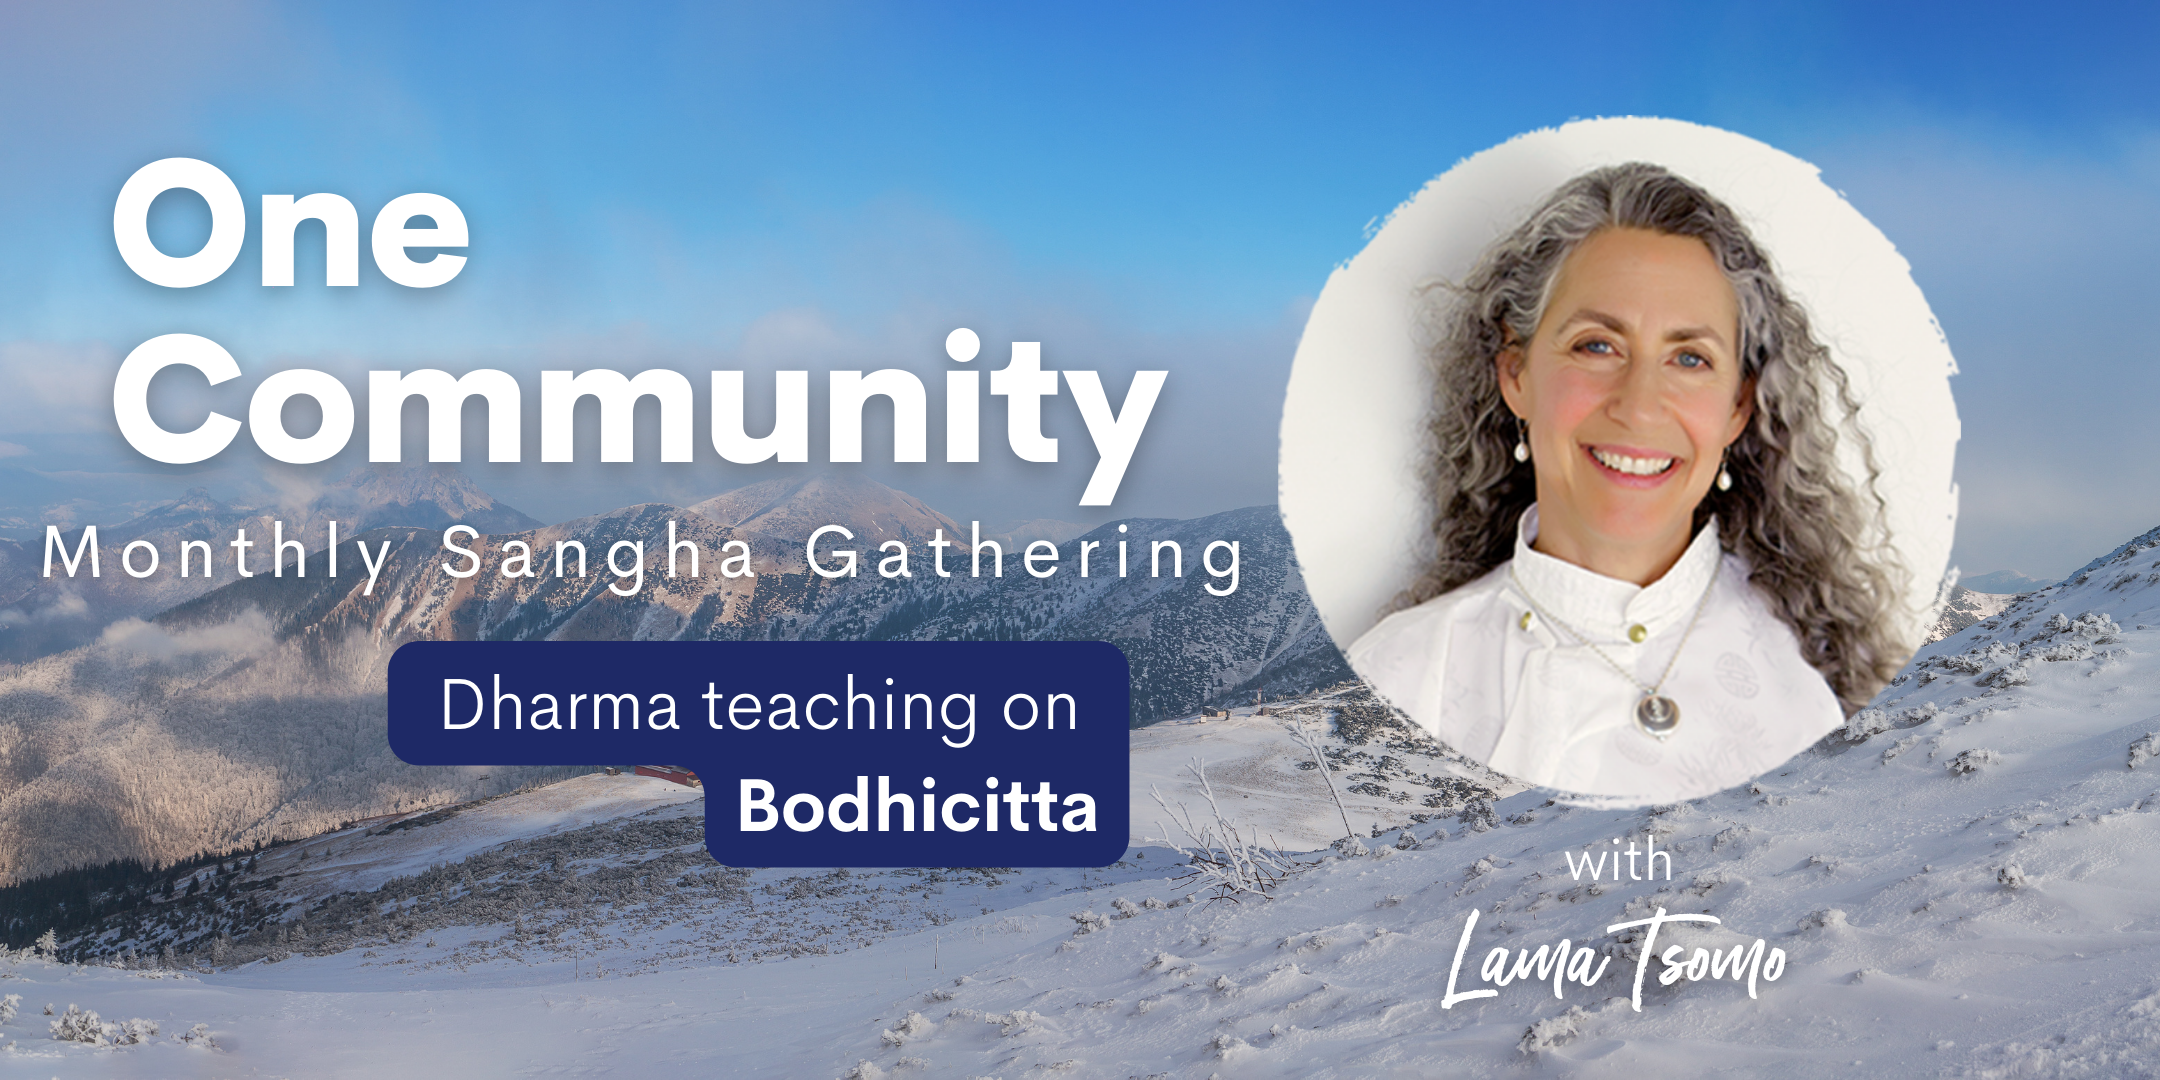 One Community Sangha Gathering - Lama Tsomo